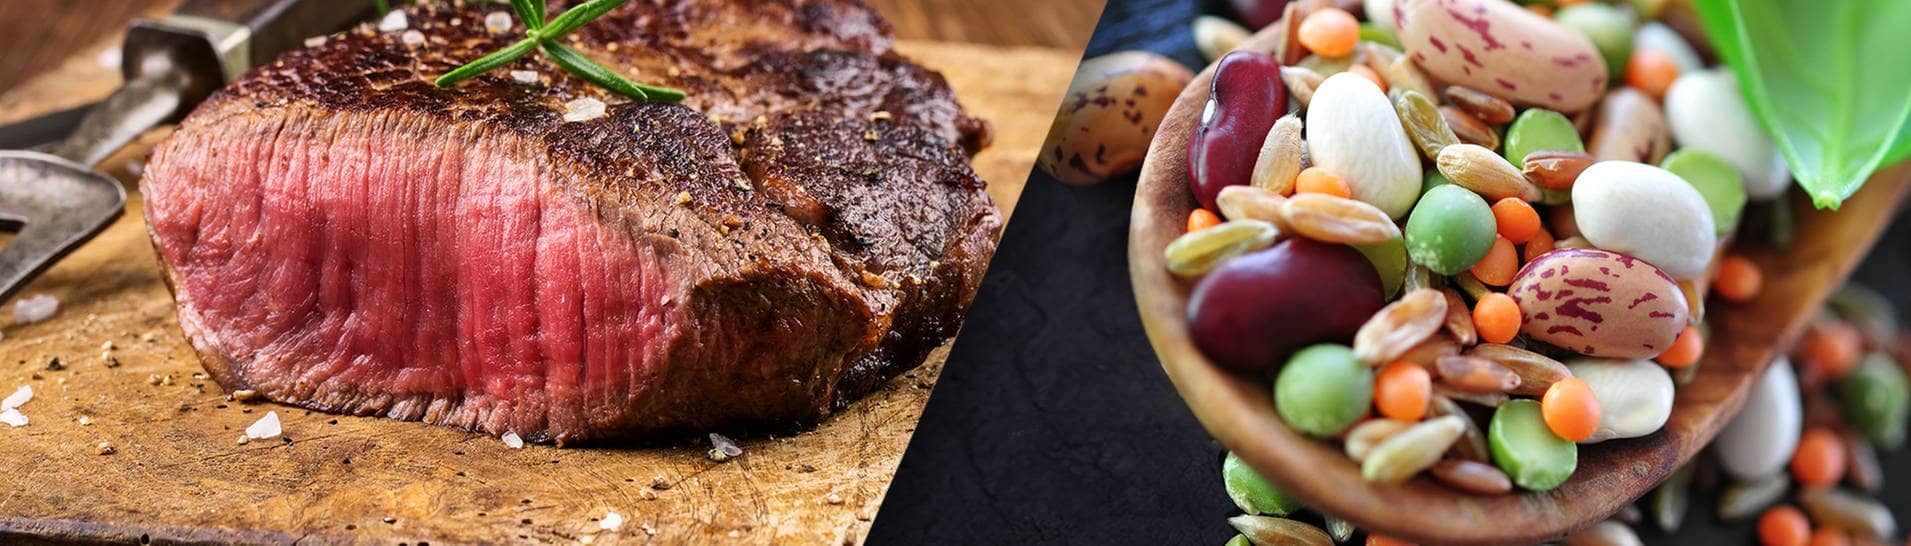 Fleisch vs. Fleischersatzprodukte – Was ist besser?